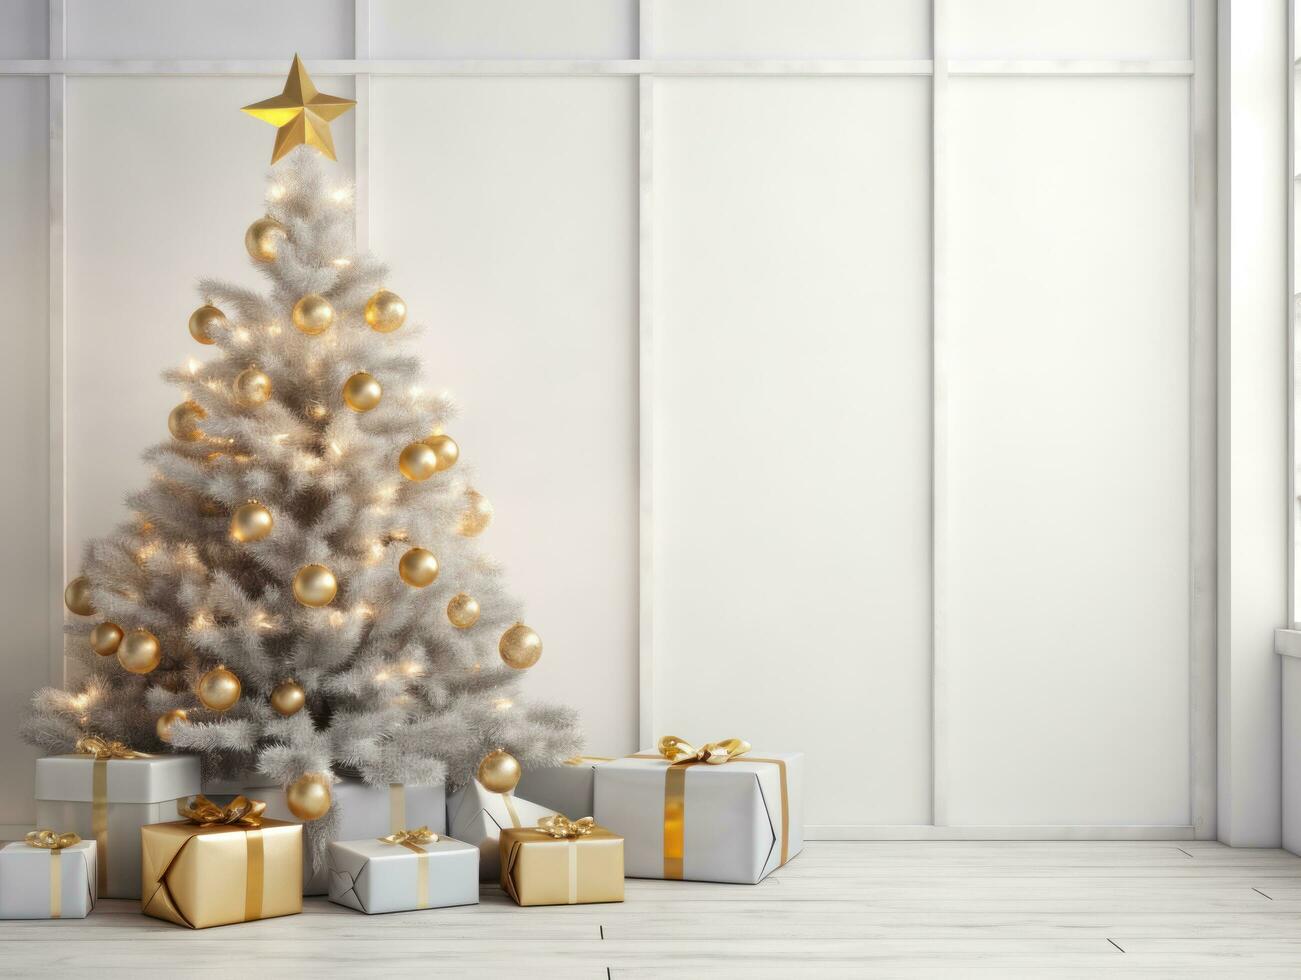 bianca camera con Natale decorazione foto